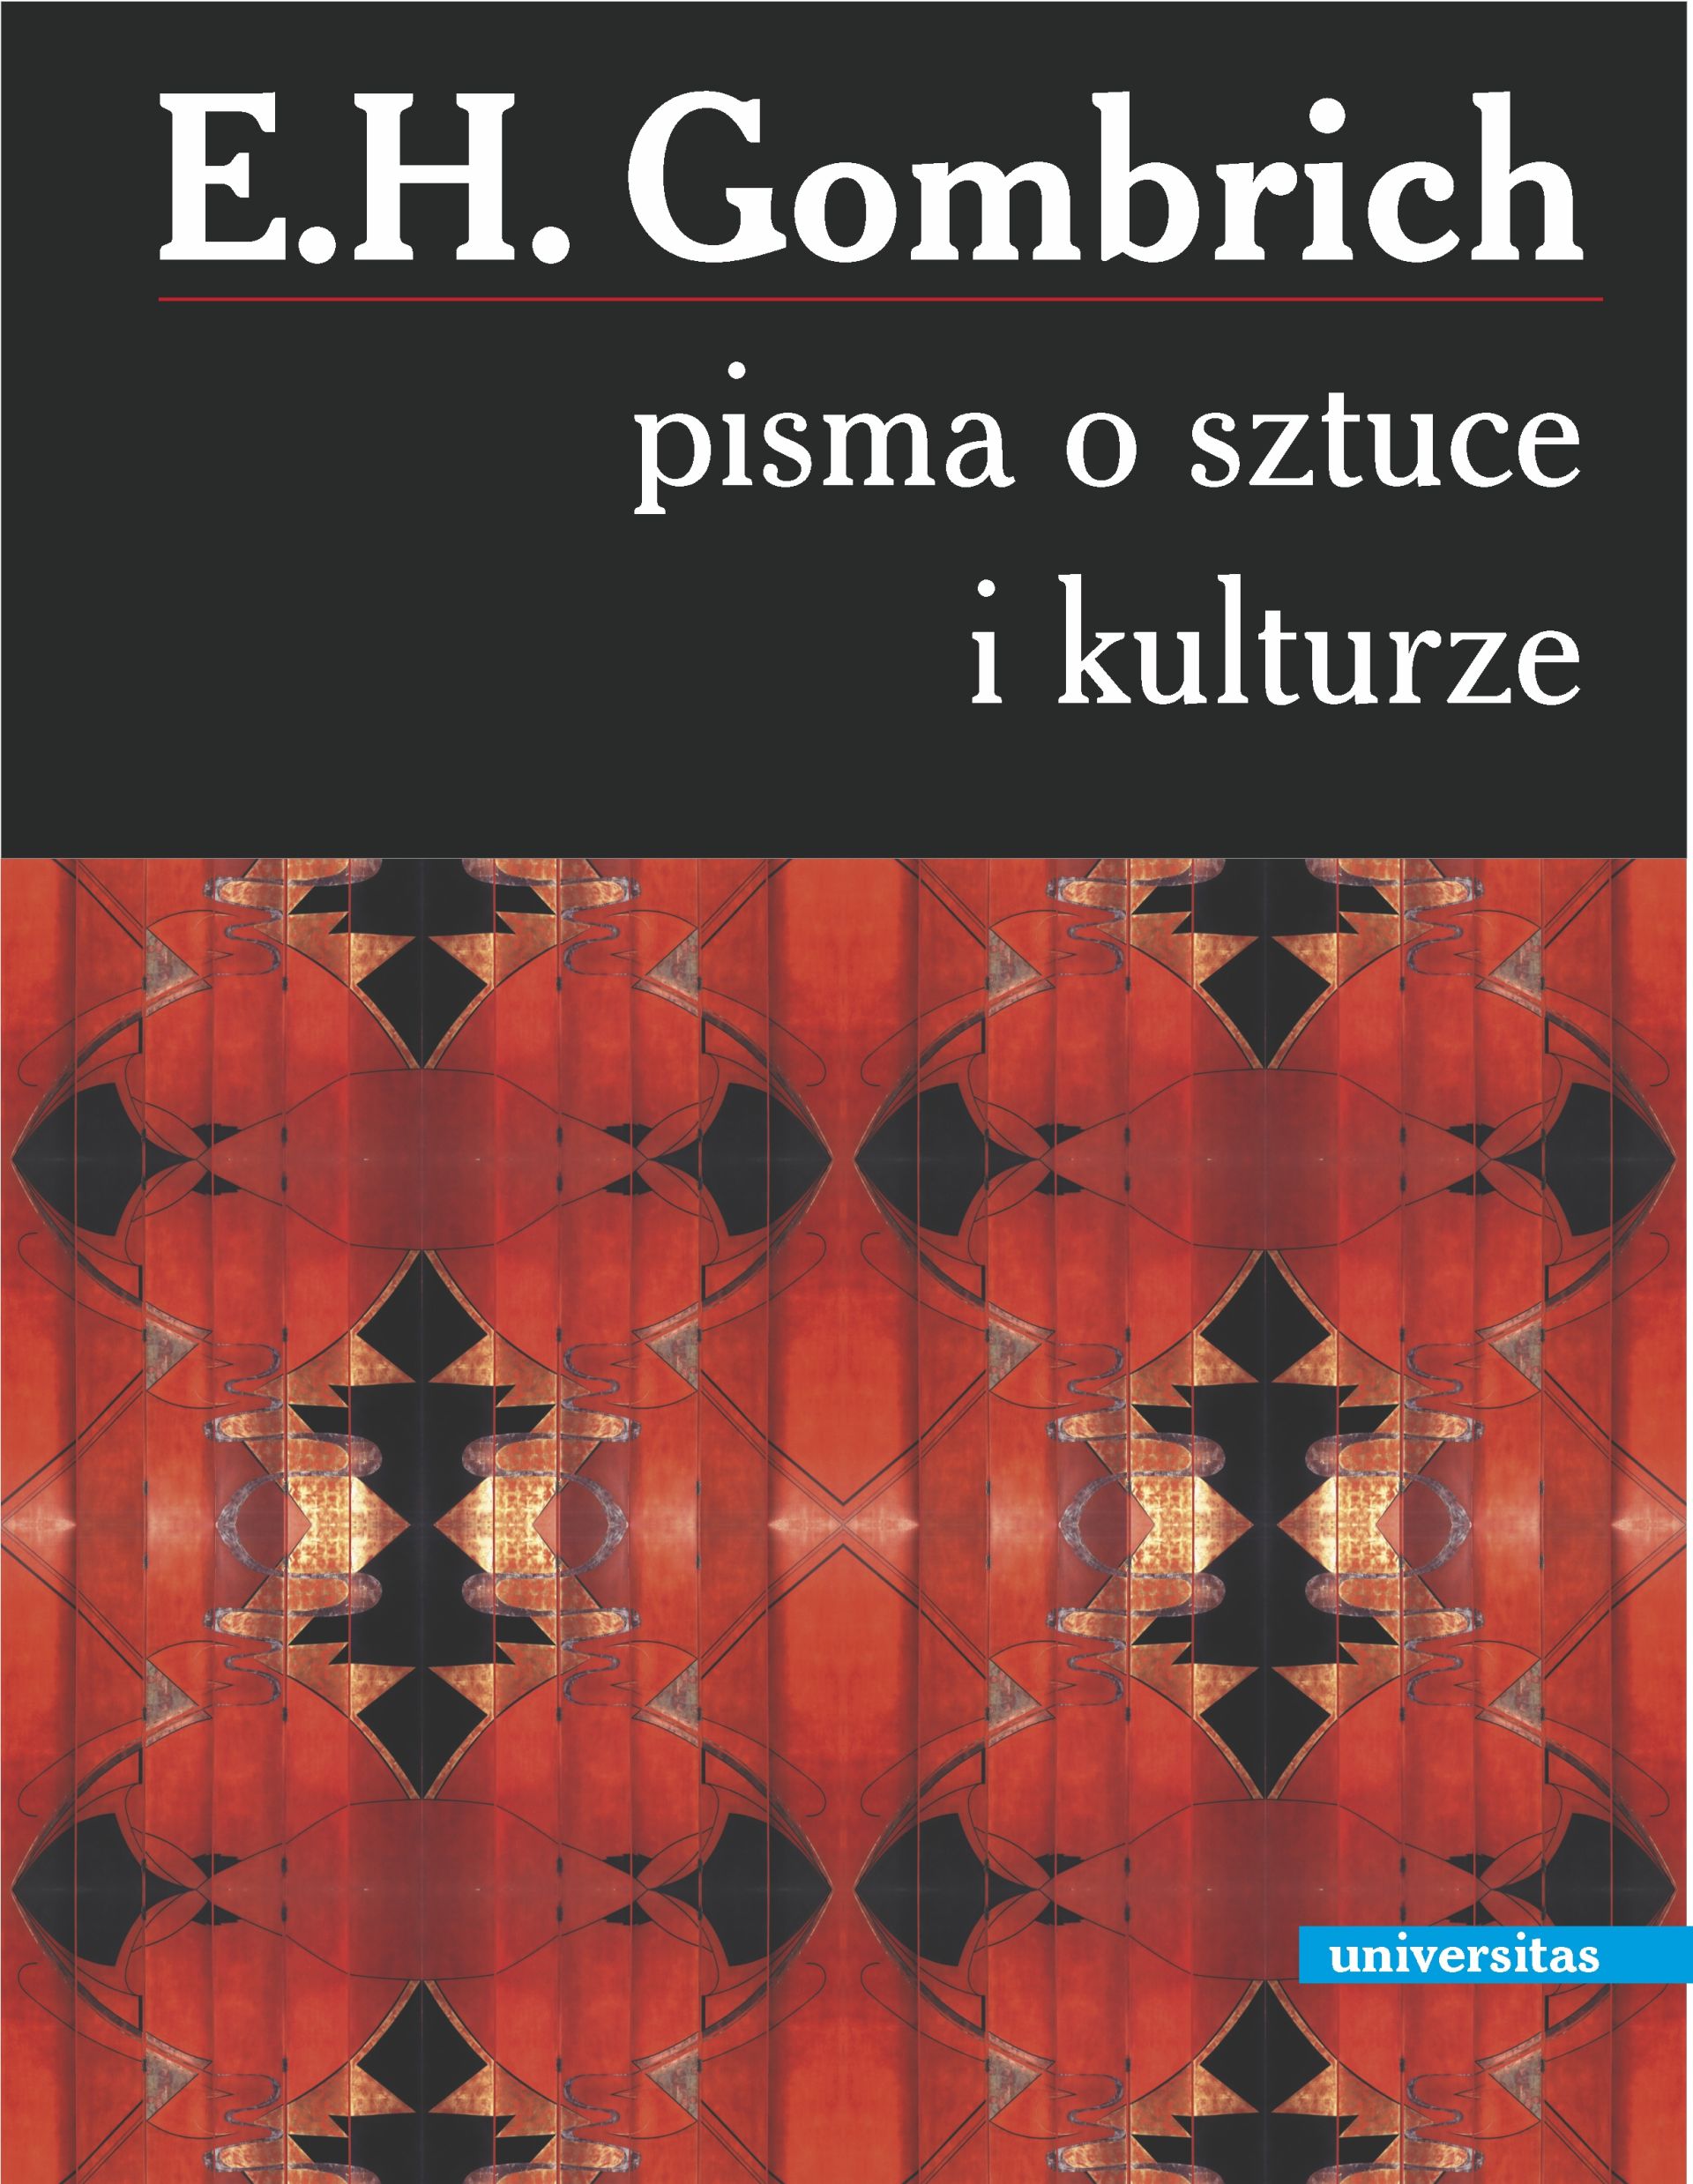 Okładka książki "Pisma o kulturze i sztuce" Ernsta H. Gombricha (źródło: materiały prasowe wydawnictwa)